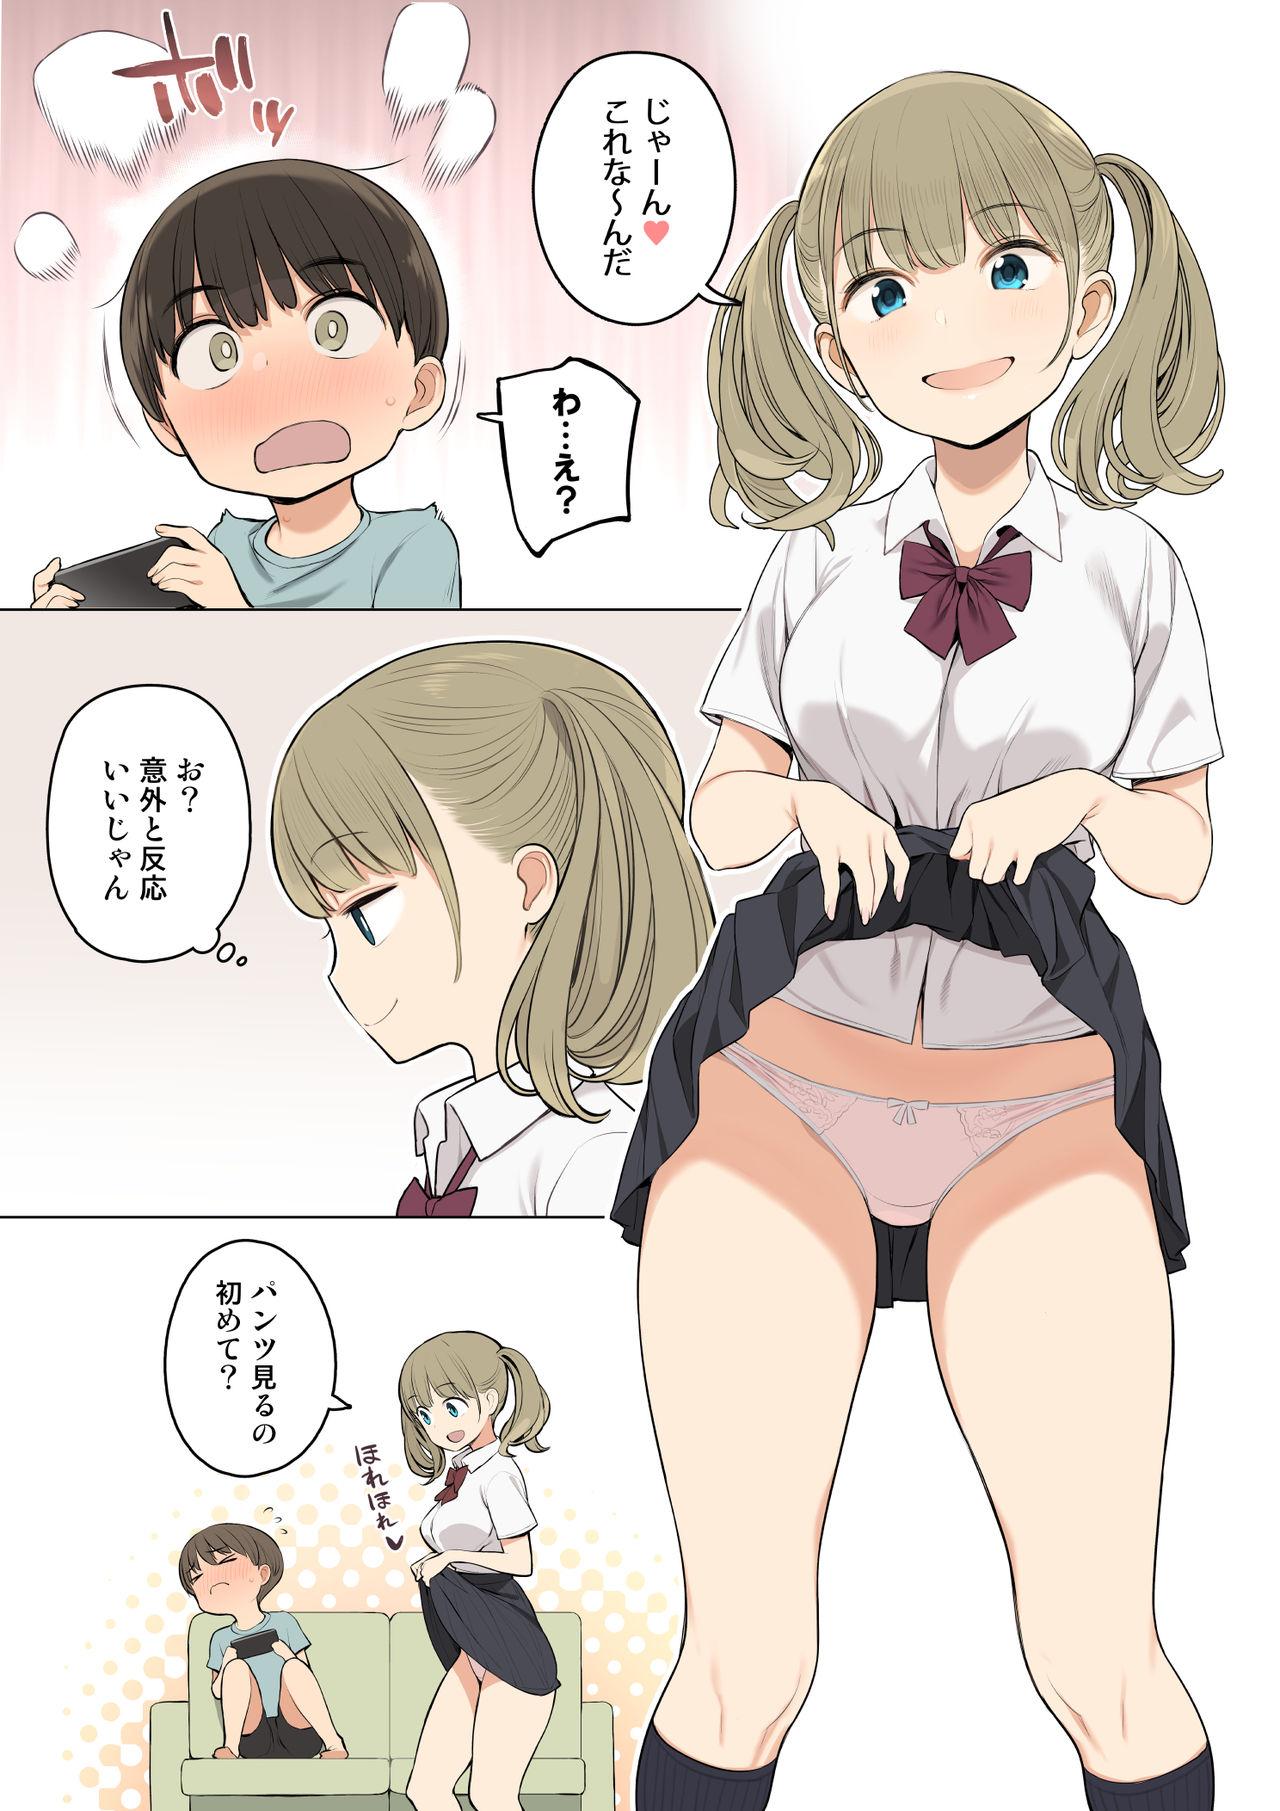 Retro Onee-chan no Tomodachi ga Ecchi na Hito Bakari datta kara - Original Petite Girl Porn - Page 4